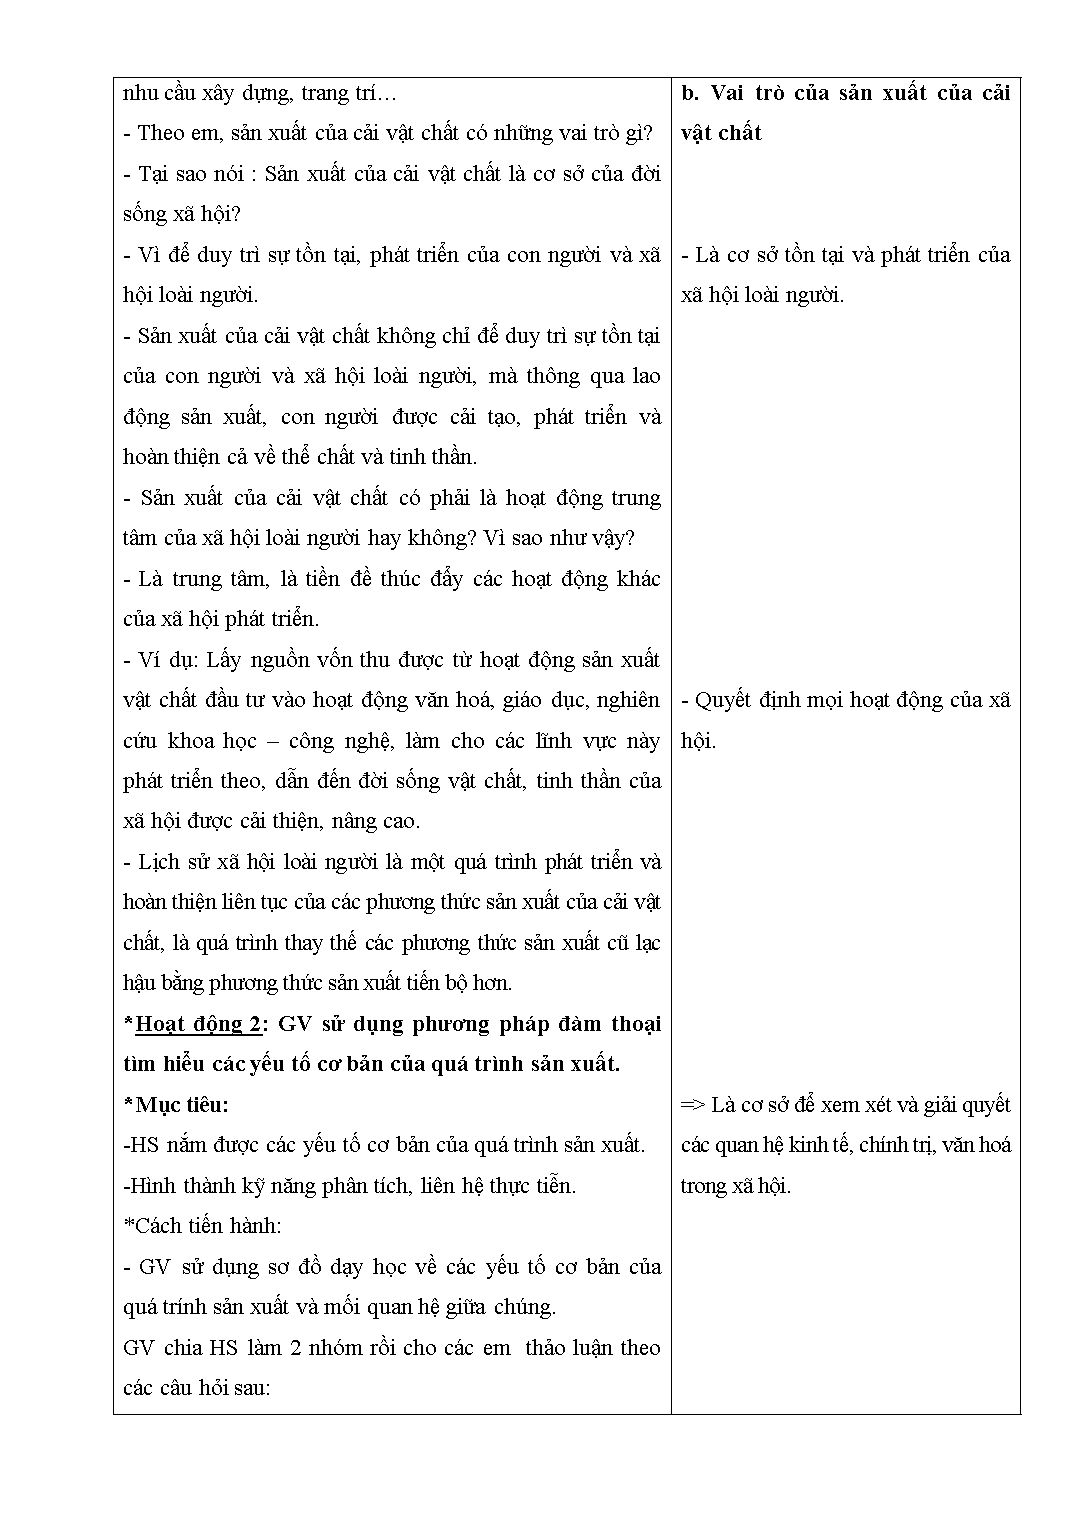 Giáo án Giáo dục công dân 11 - Lê Quang Minh trang 3